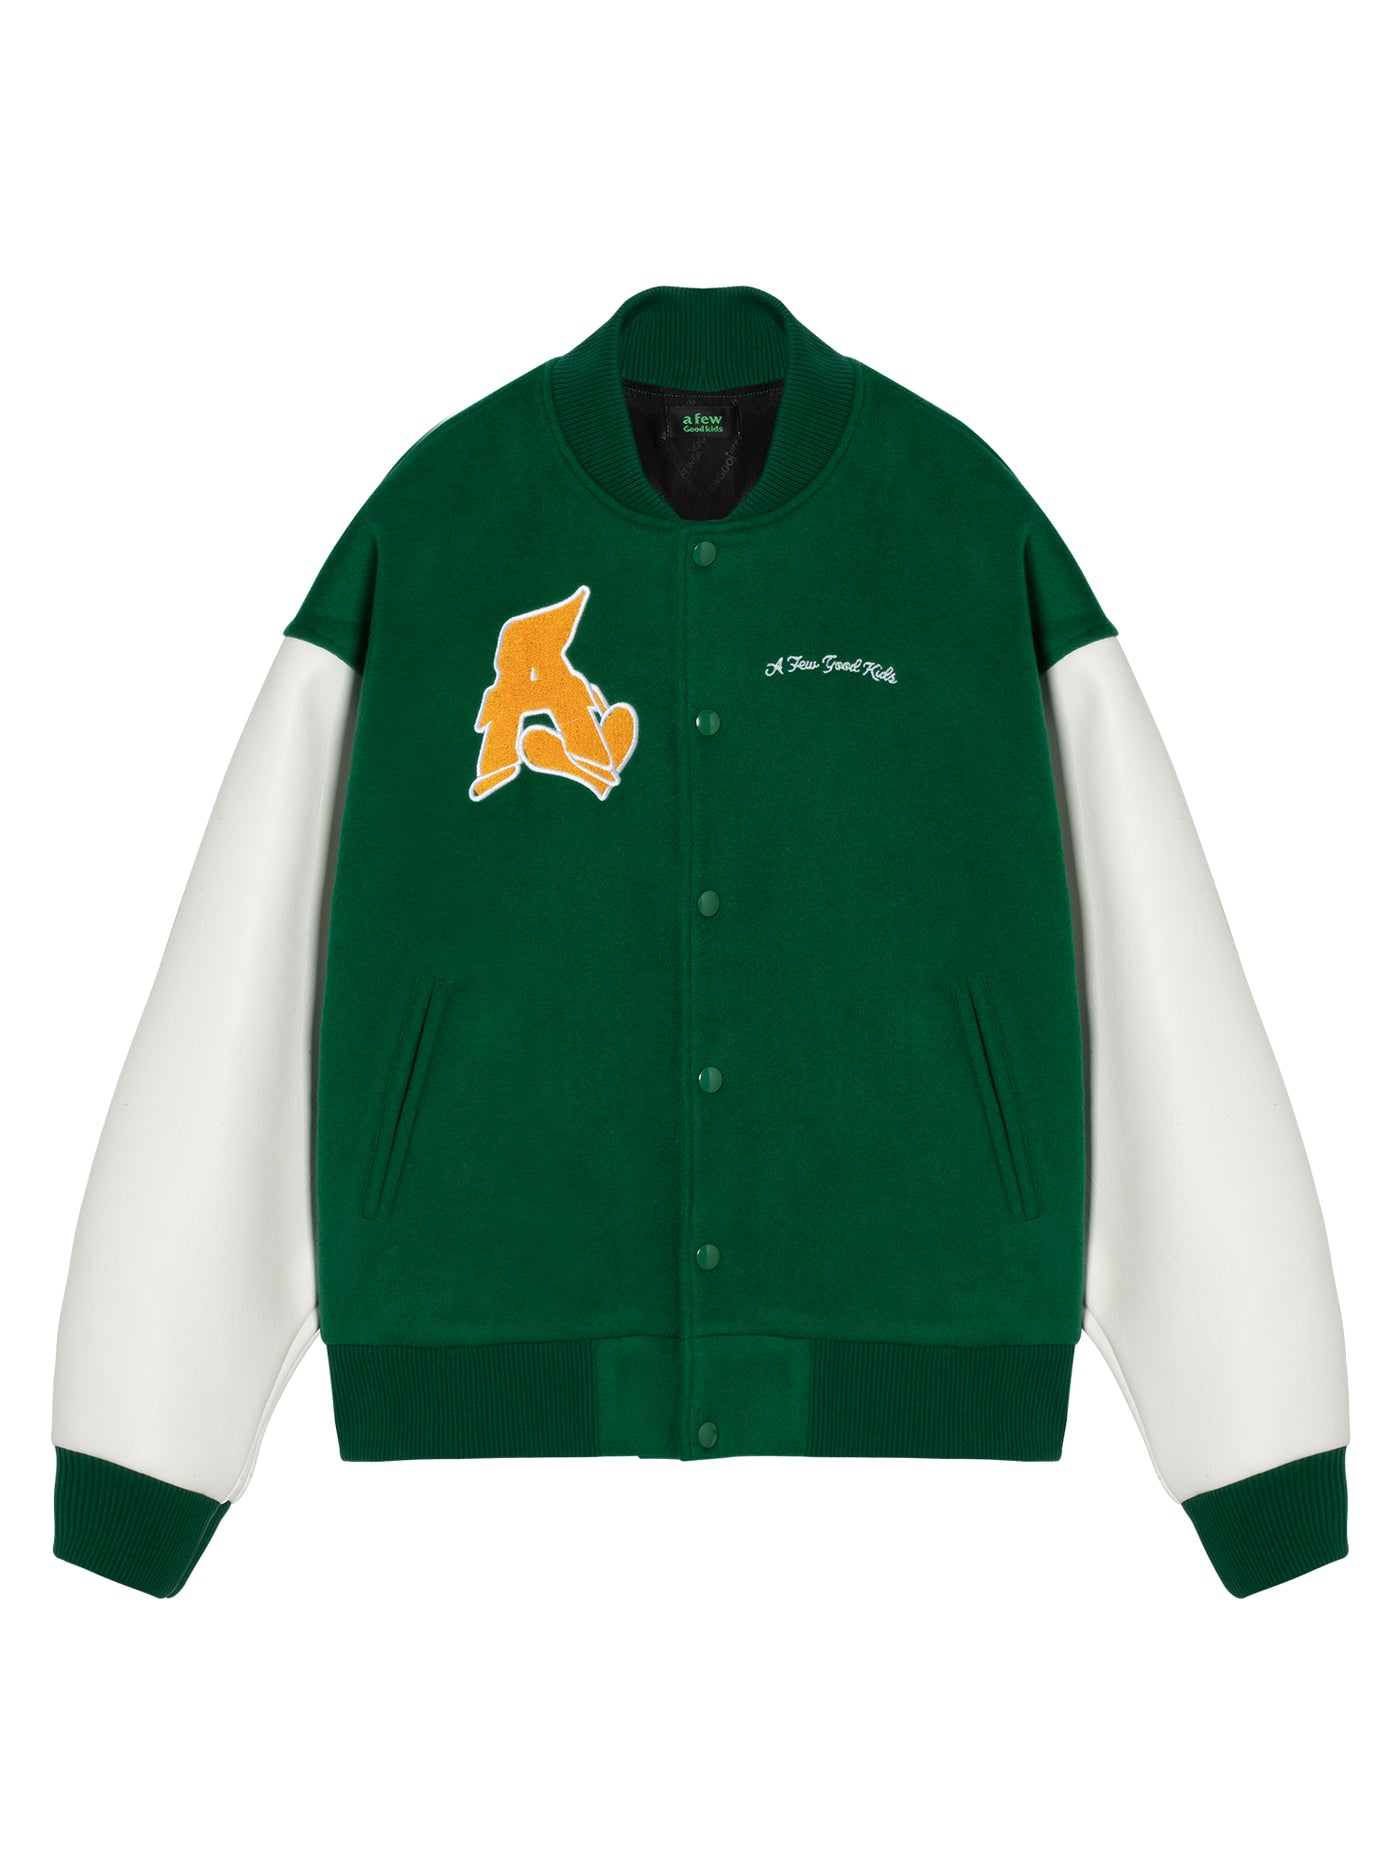 DONCARE(AFGK) "Basic Logo Varsity Jacket"